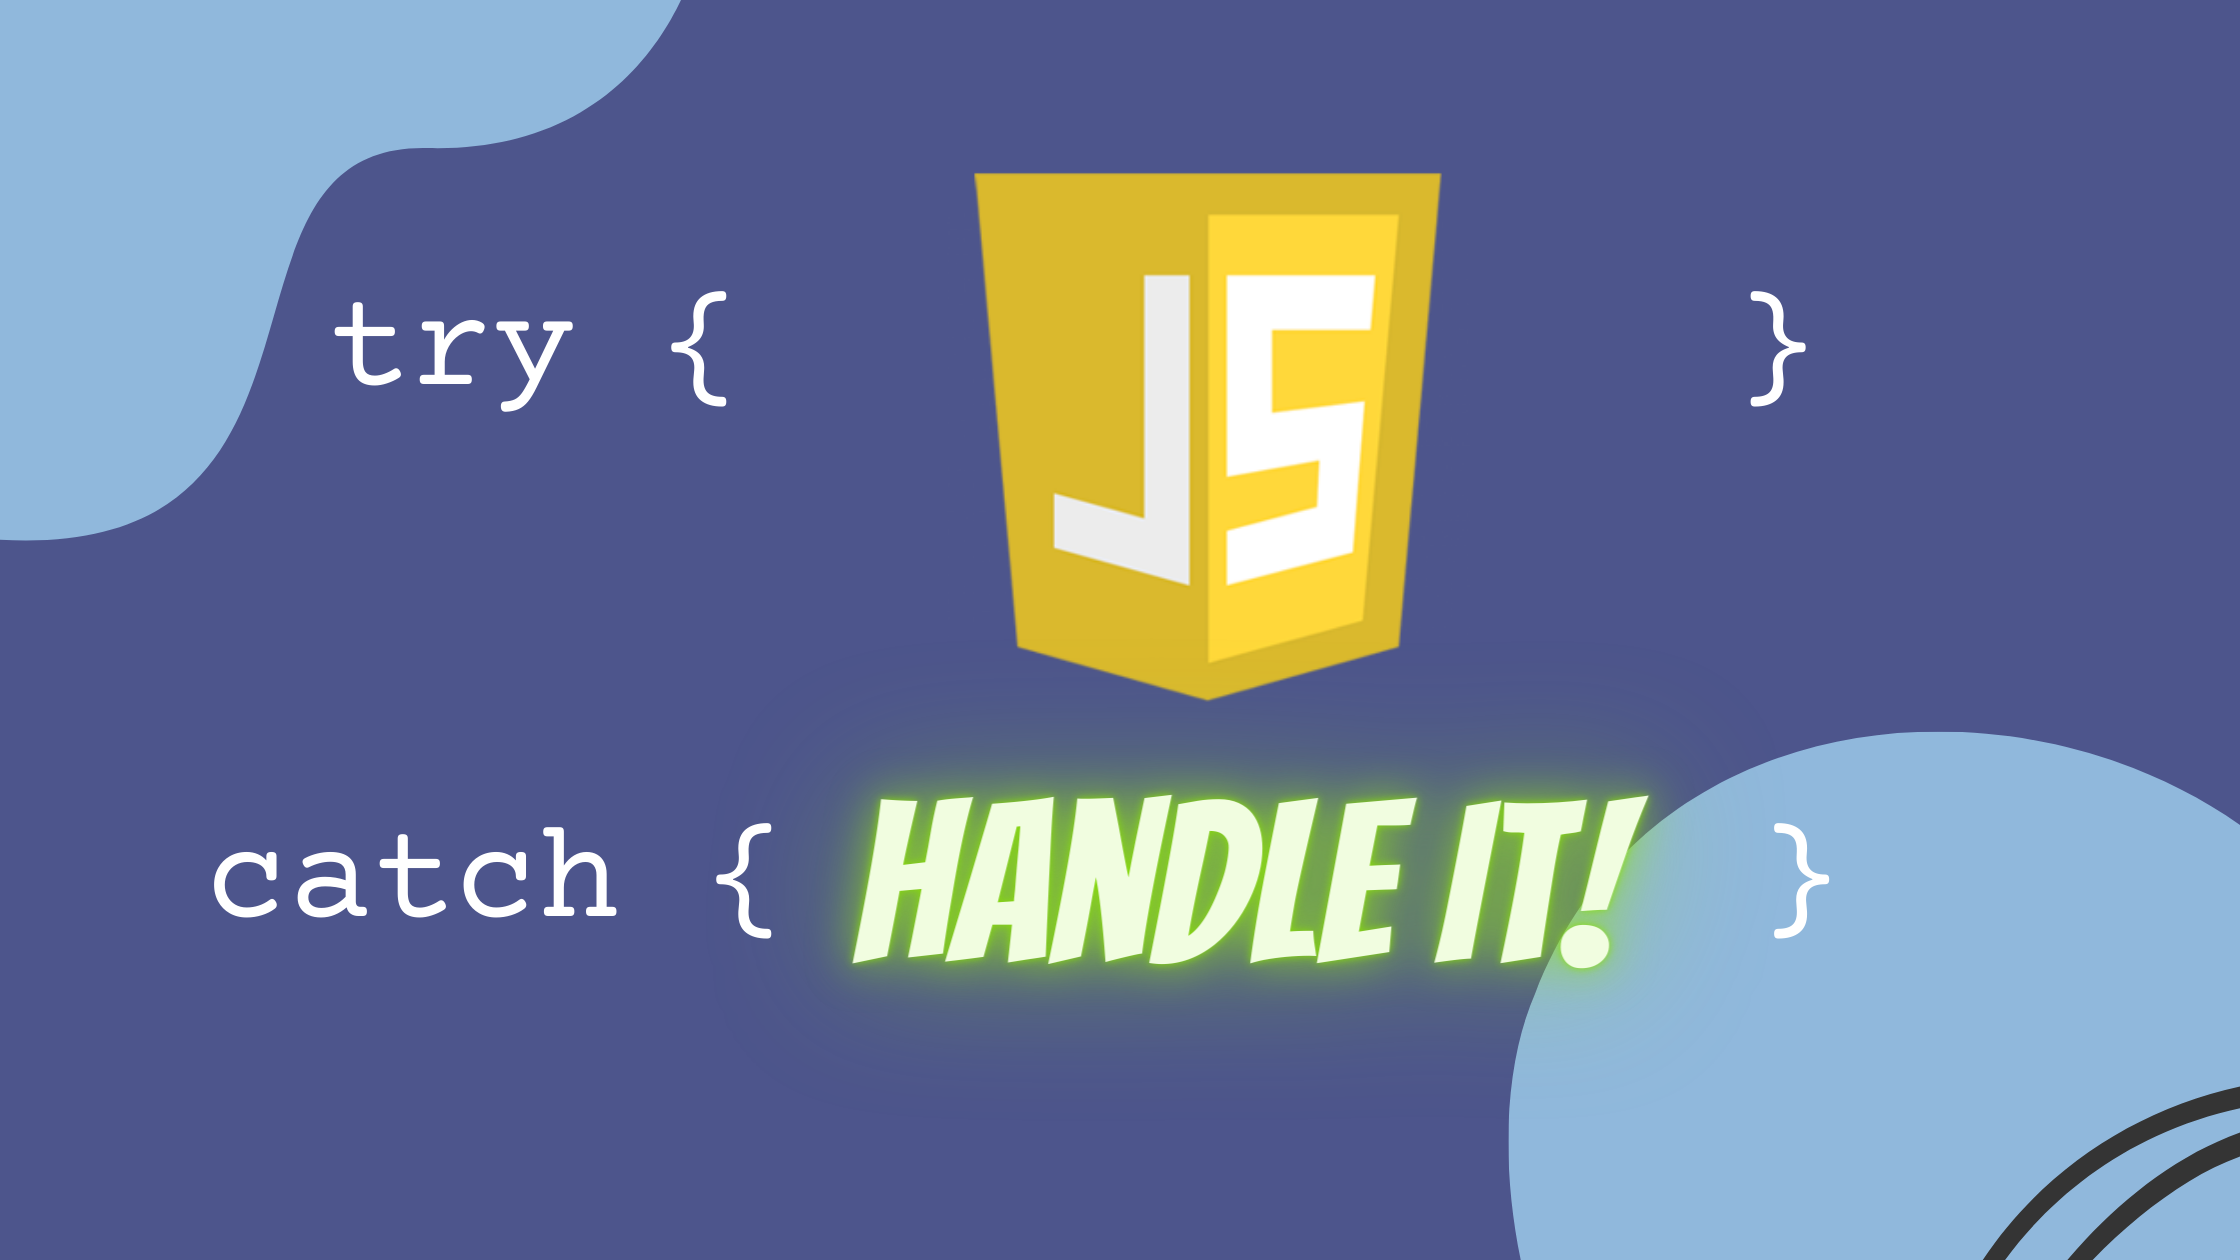 Robust JavaScript Error Handling. Learn About JavaScript